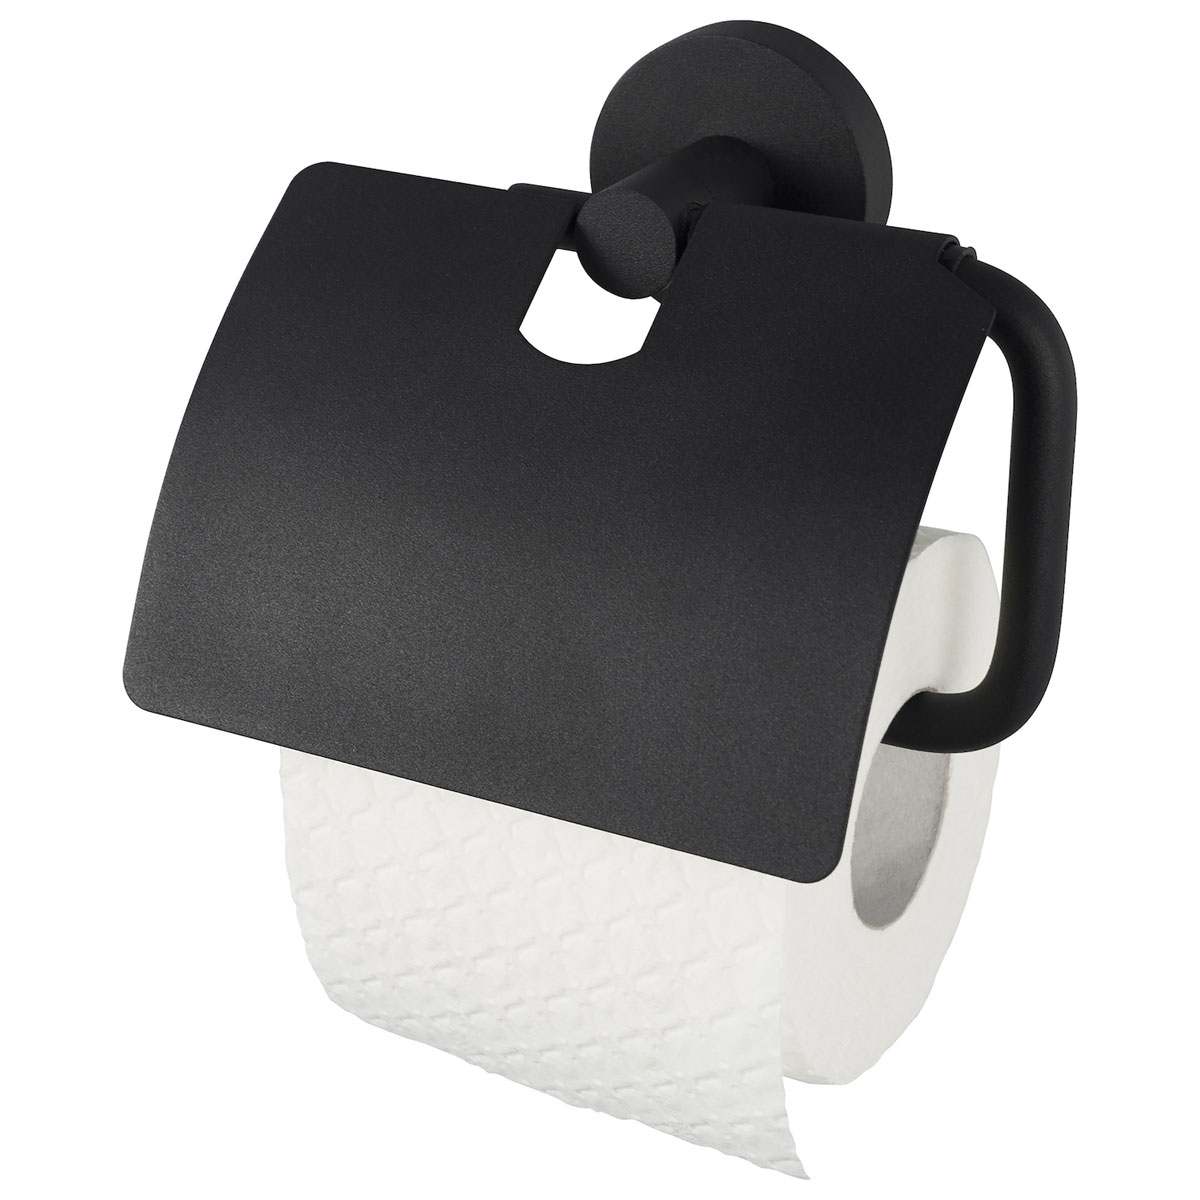 Haceka Toilettenpapierhalter mit Deckel Kosmos schwarz | 297058